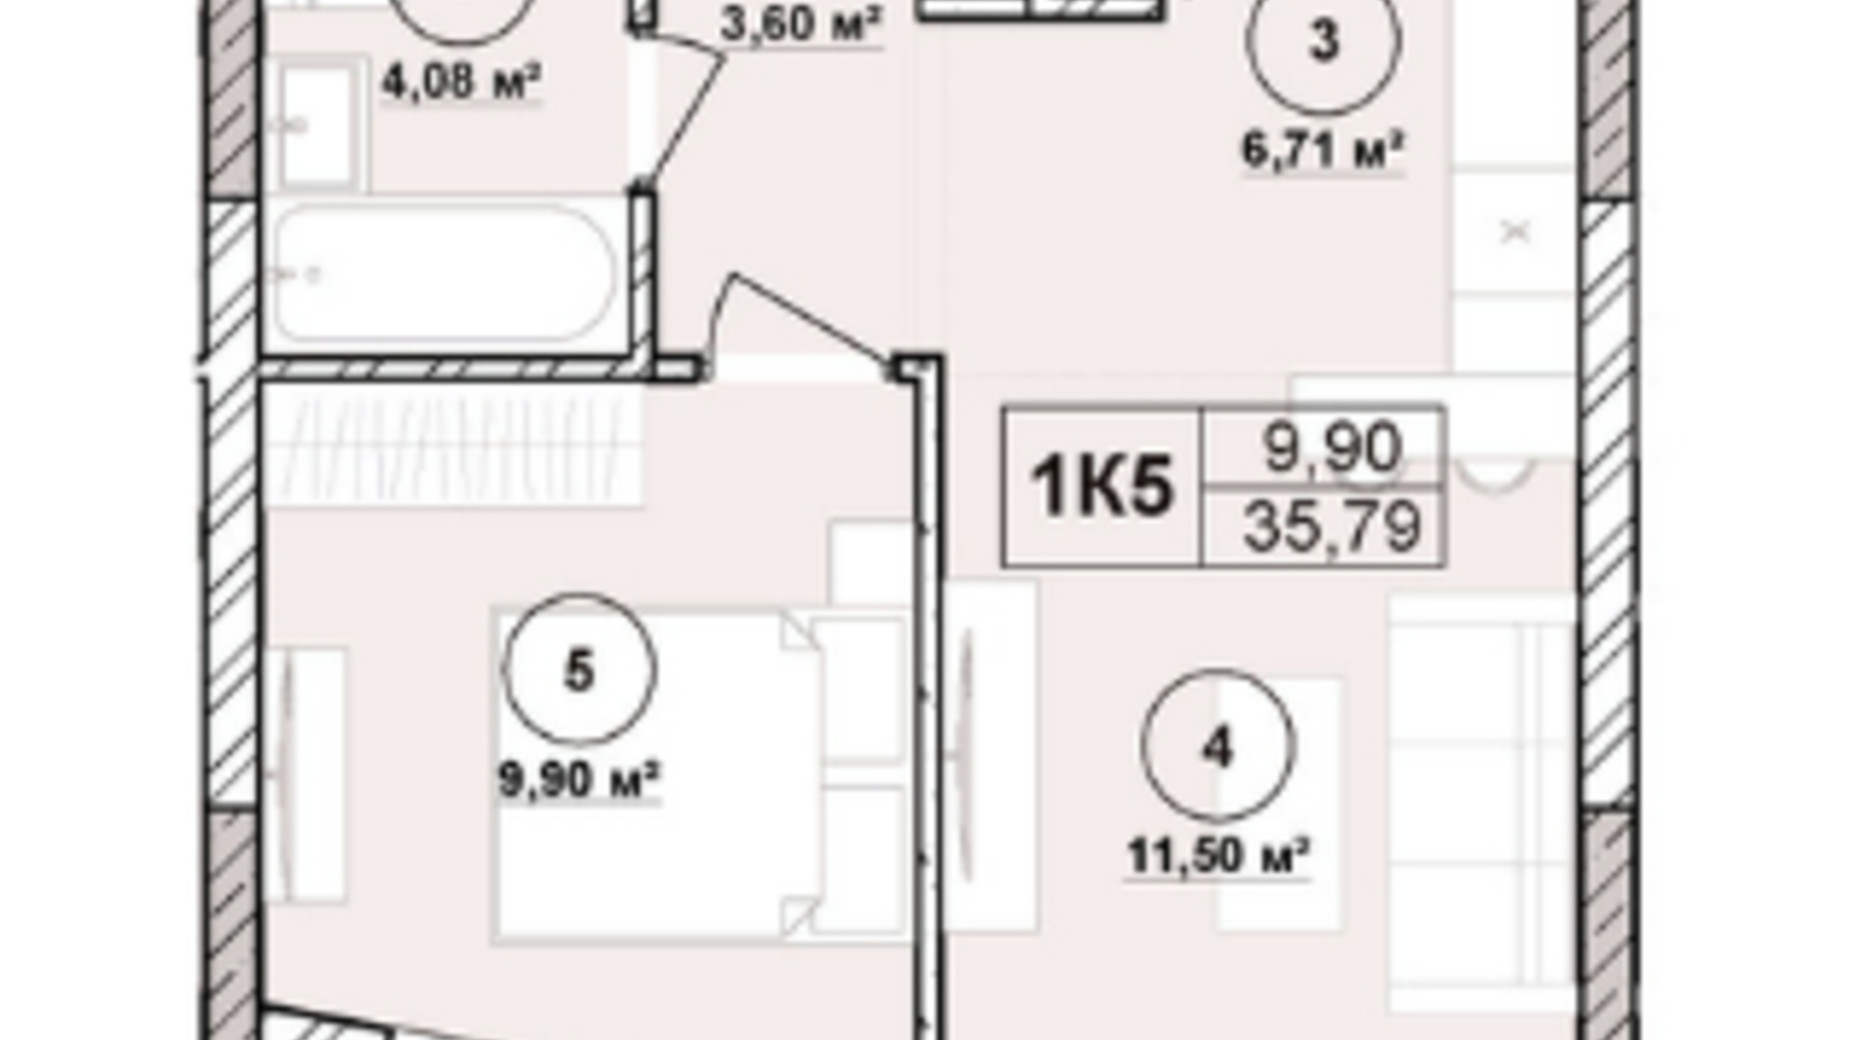 Планировка апартаментов в ЖК Milltown 35.79 м², фото 673240